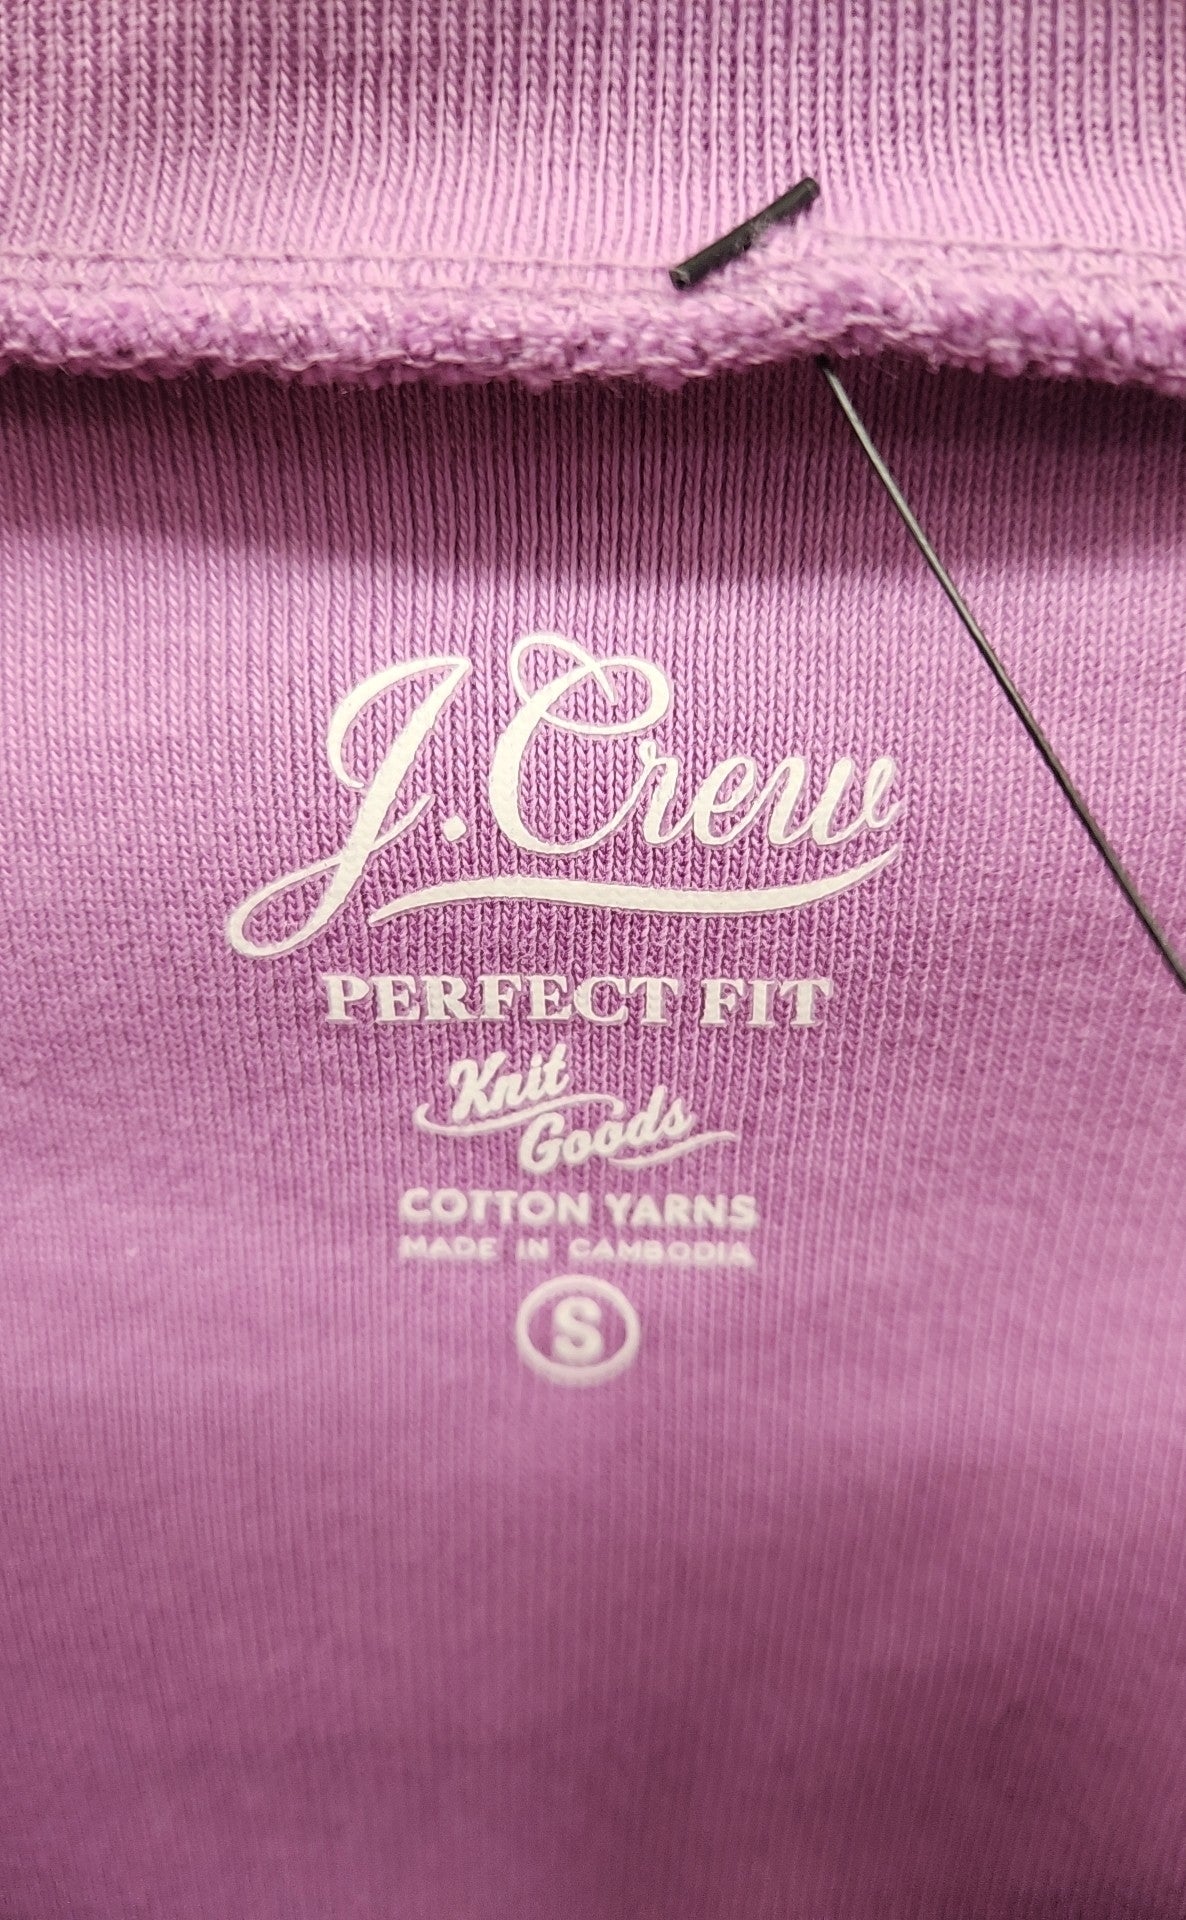 J Crew Women's Size S Purple Long Sleeve Top